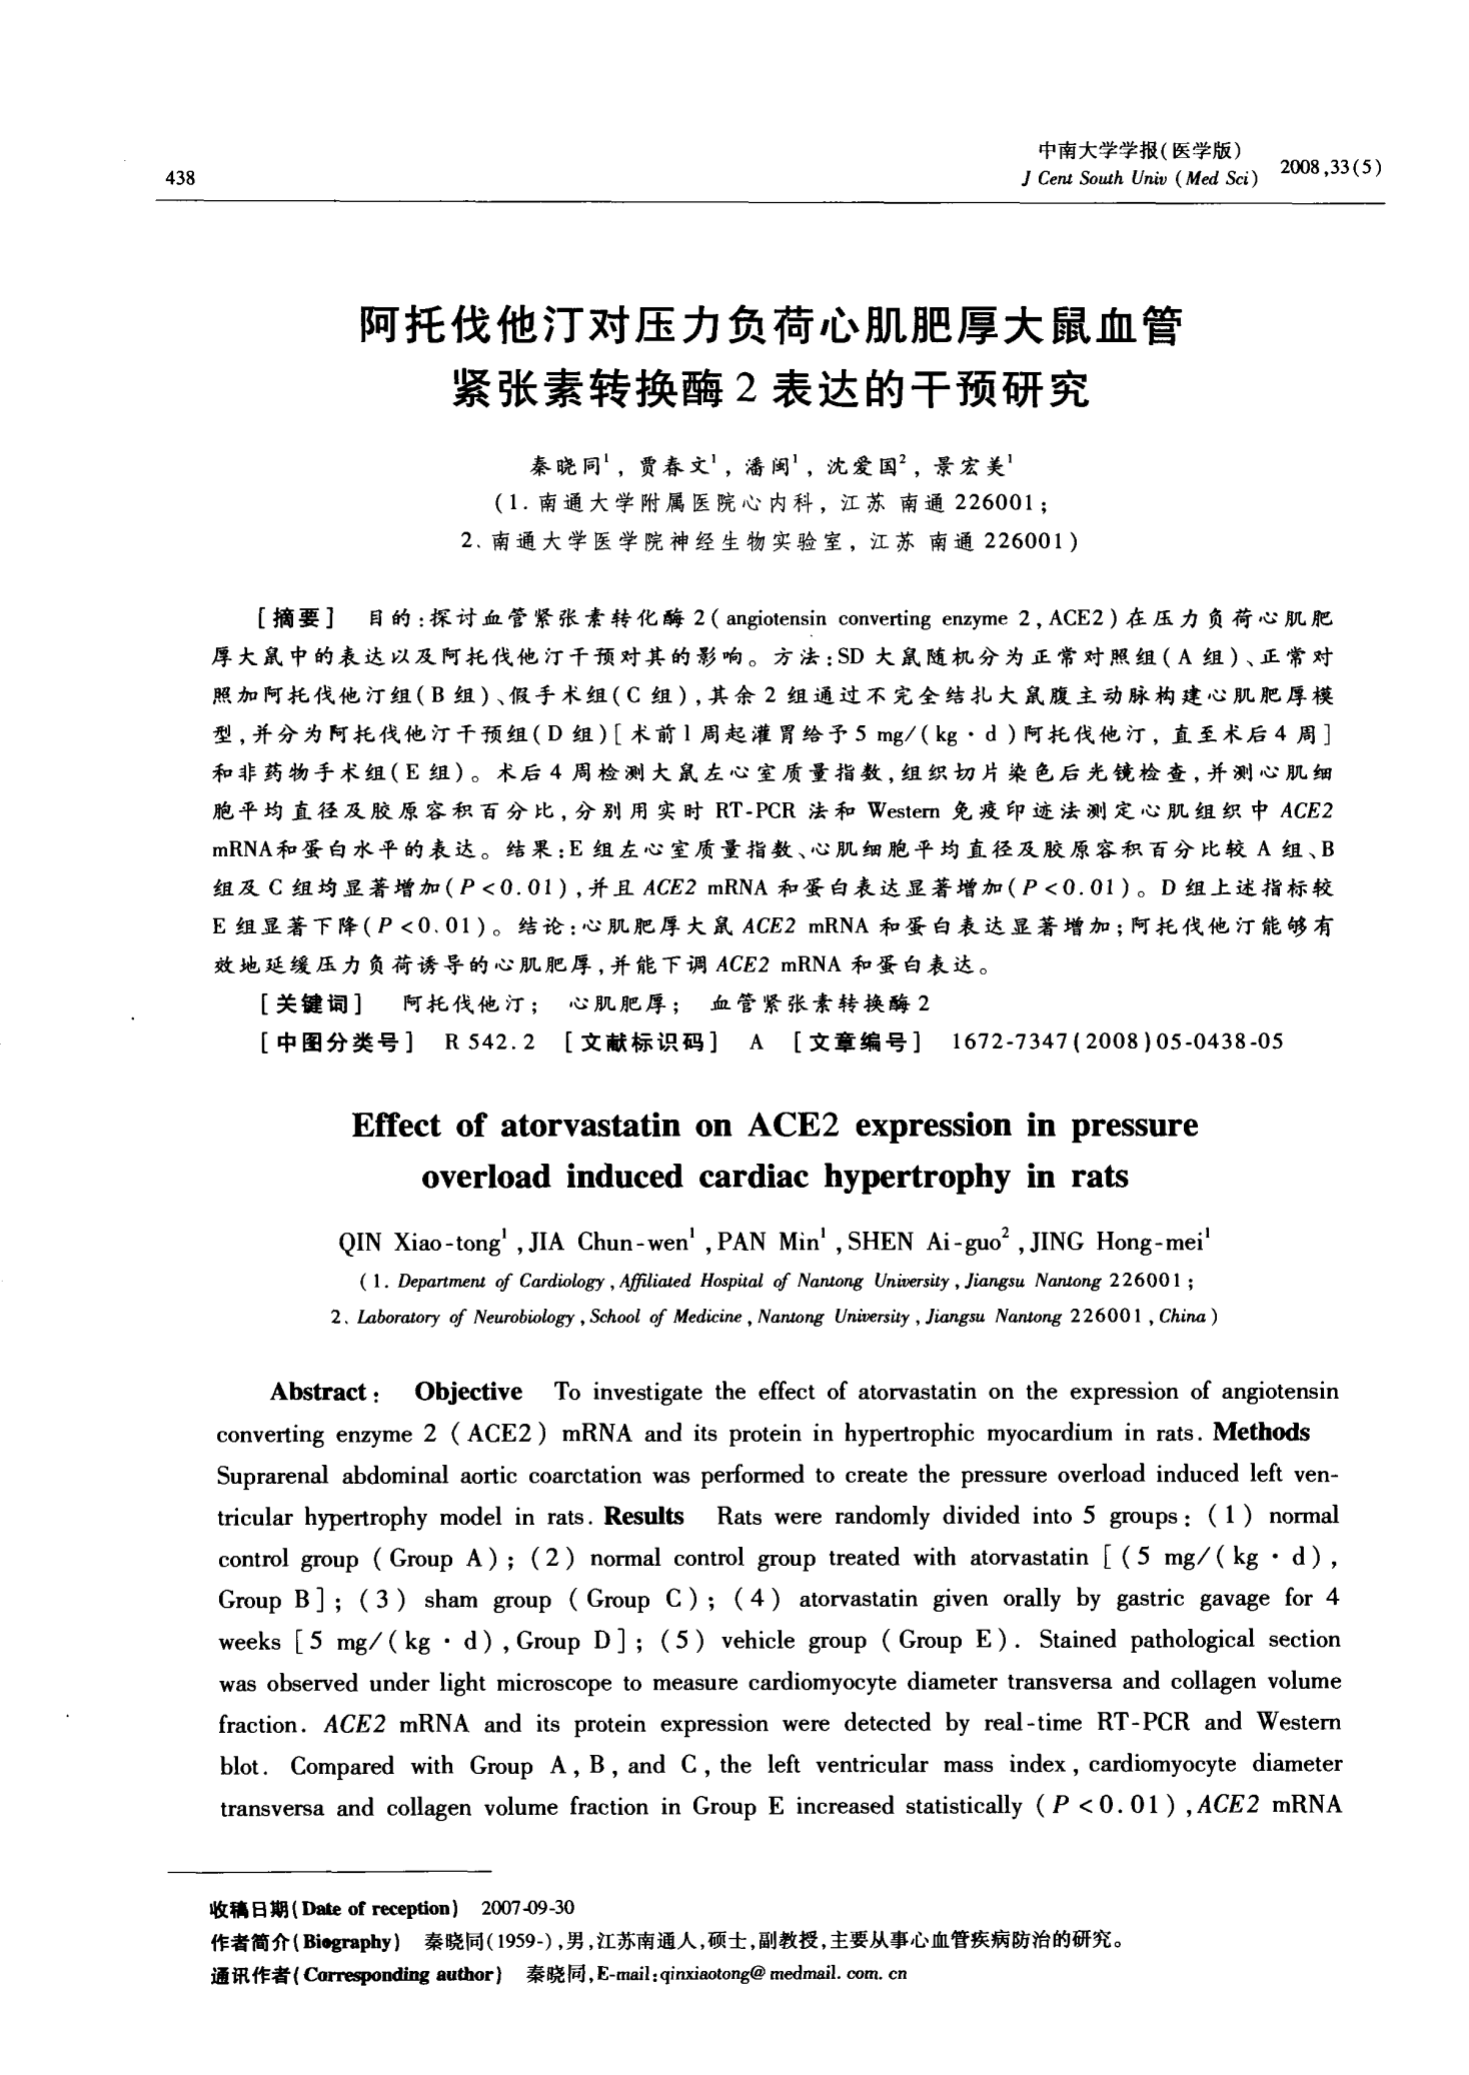 中国贝伐珠单抗生物类似药在美国FDA上市许可申请获受理